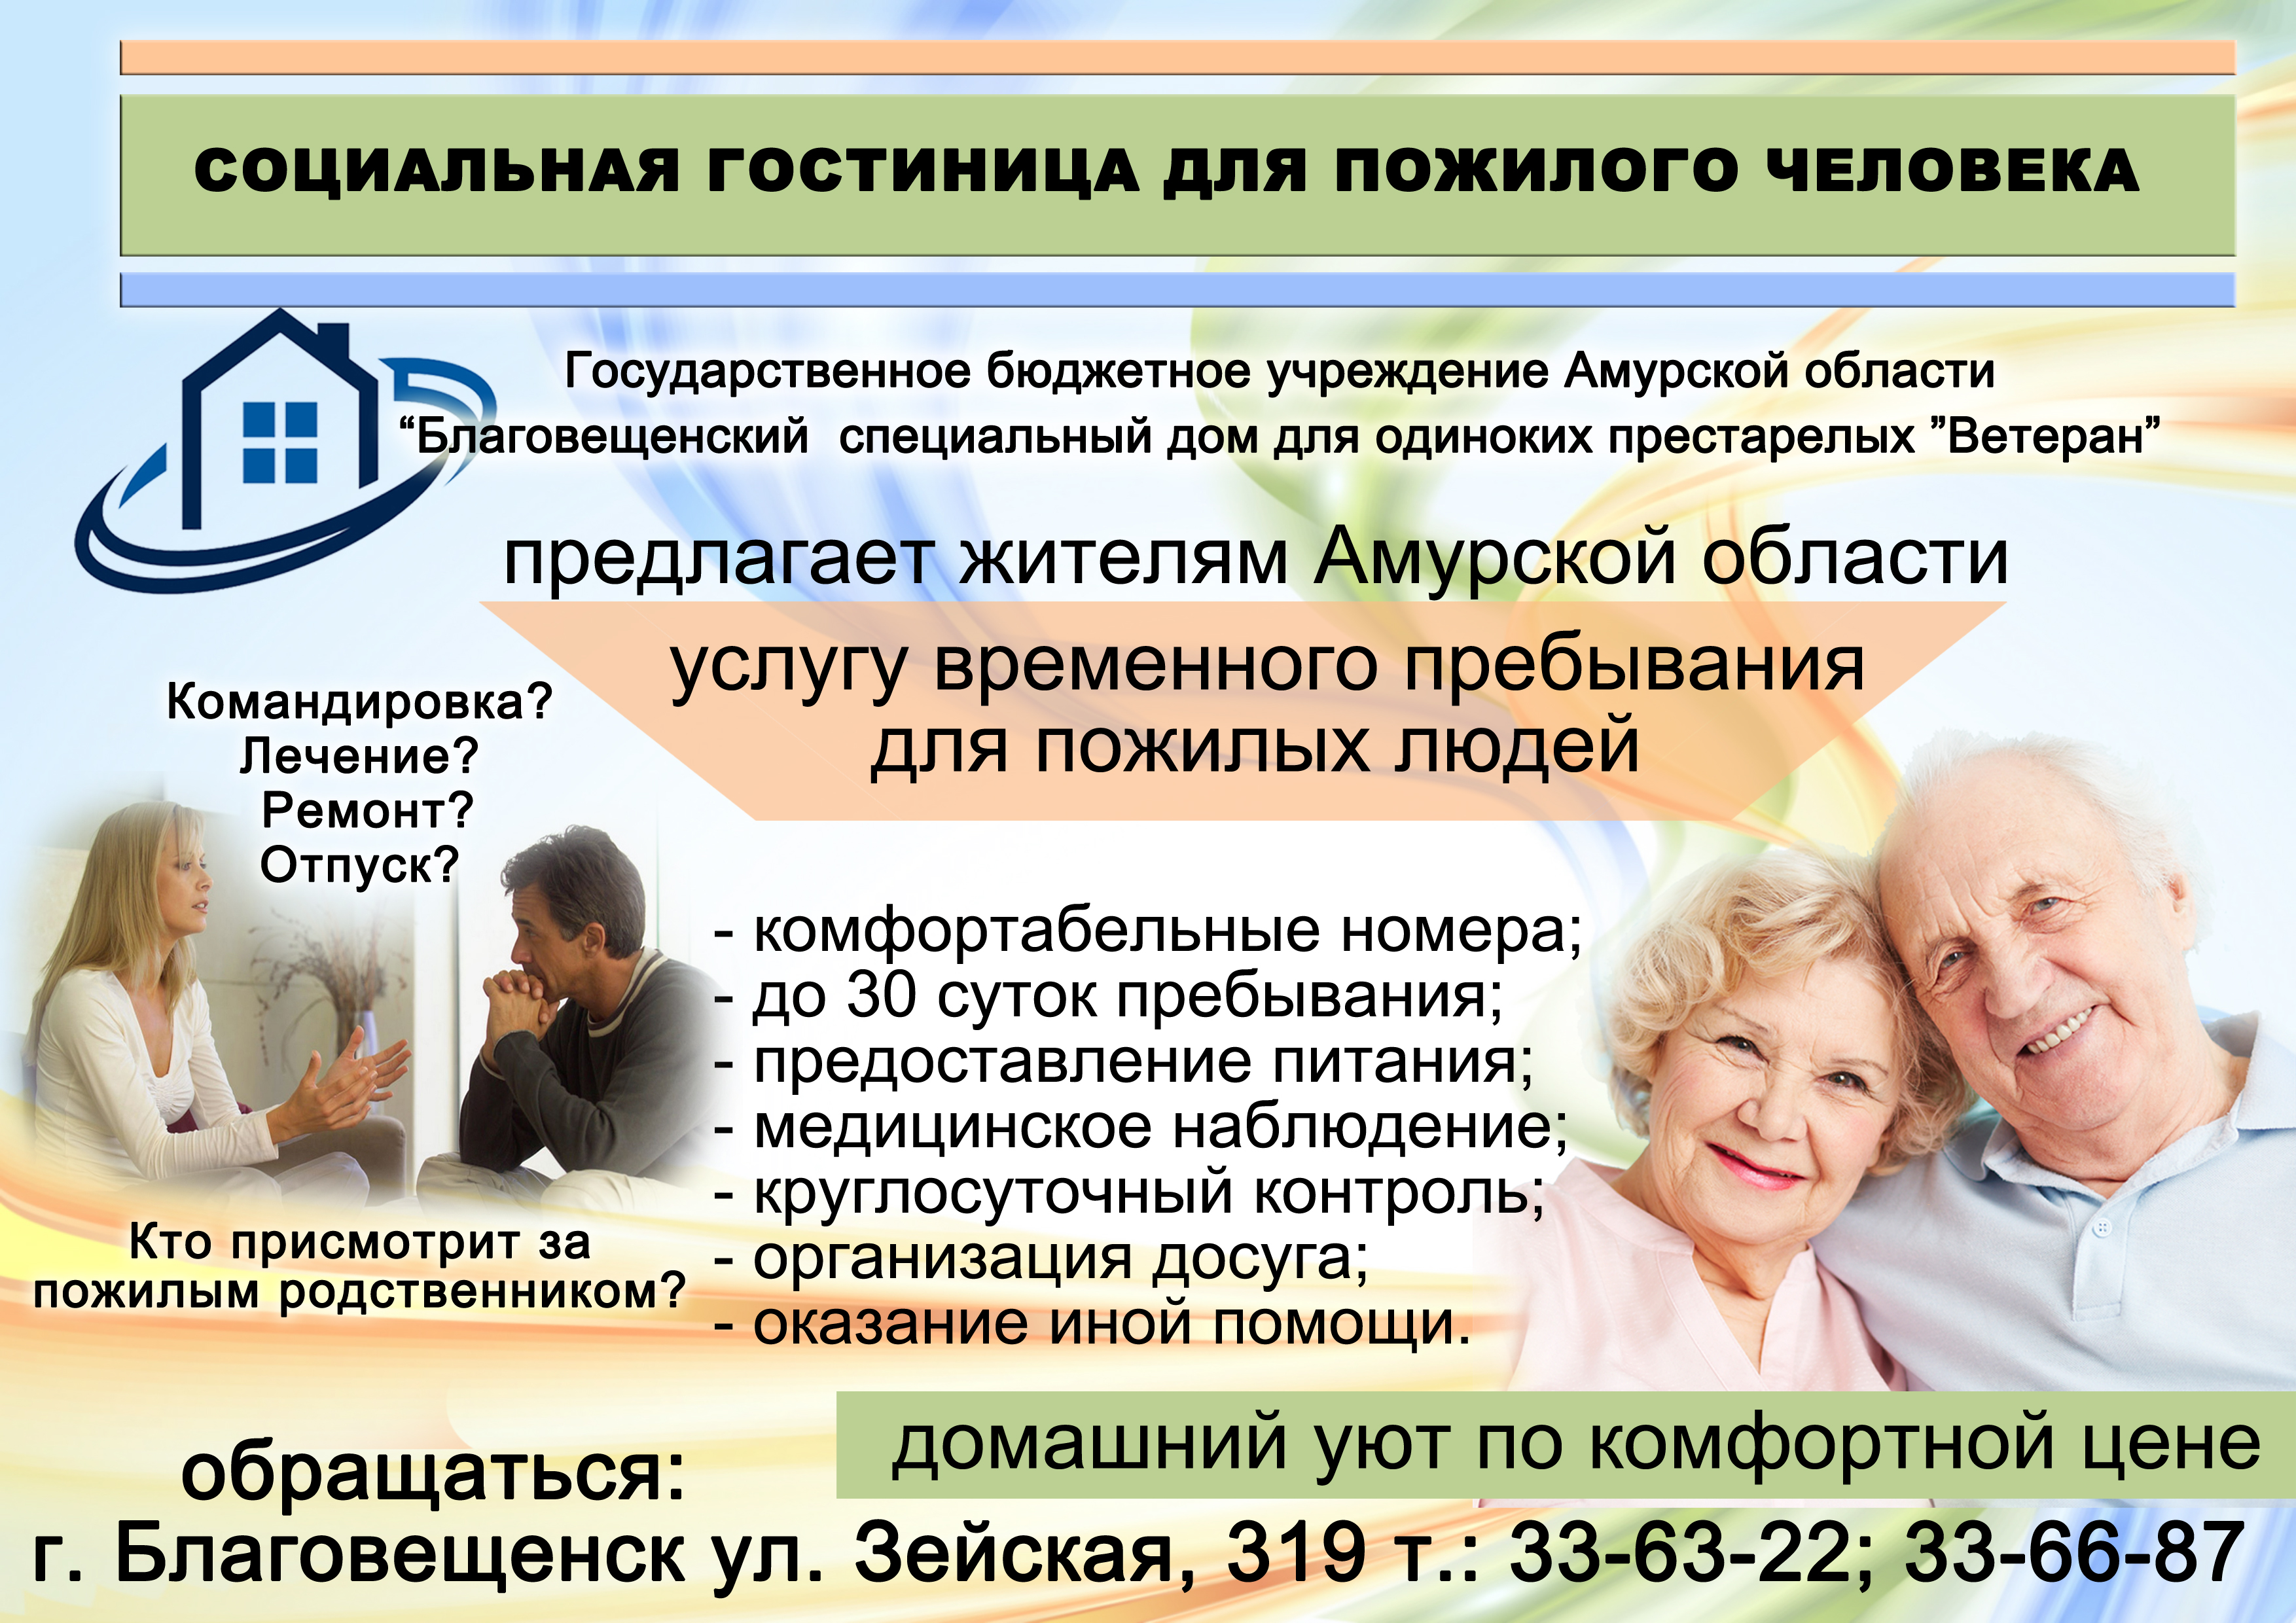 Учреждения социального обслуживания цель. Социальные услуги для пожилых людей. Реклама ко Дню пожилых людей. Реклама для пожилых. Социальный проект для пожилых людей.